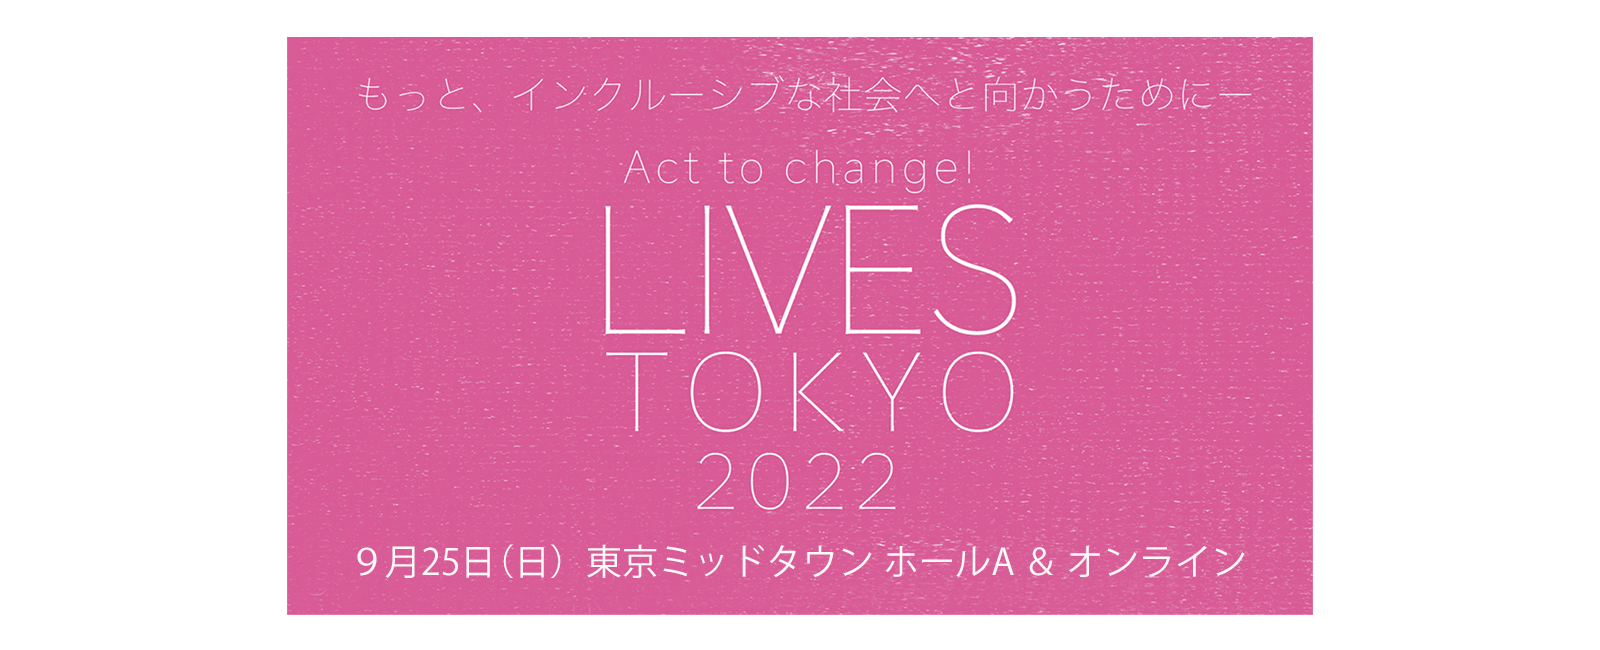 LIVES TOKYO 2022